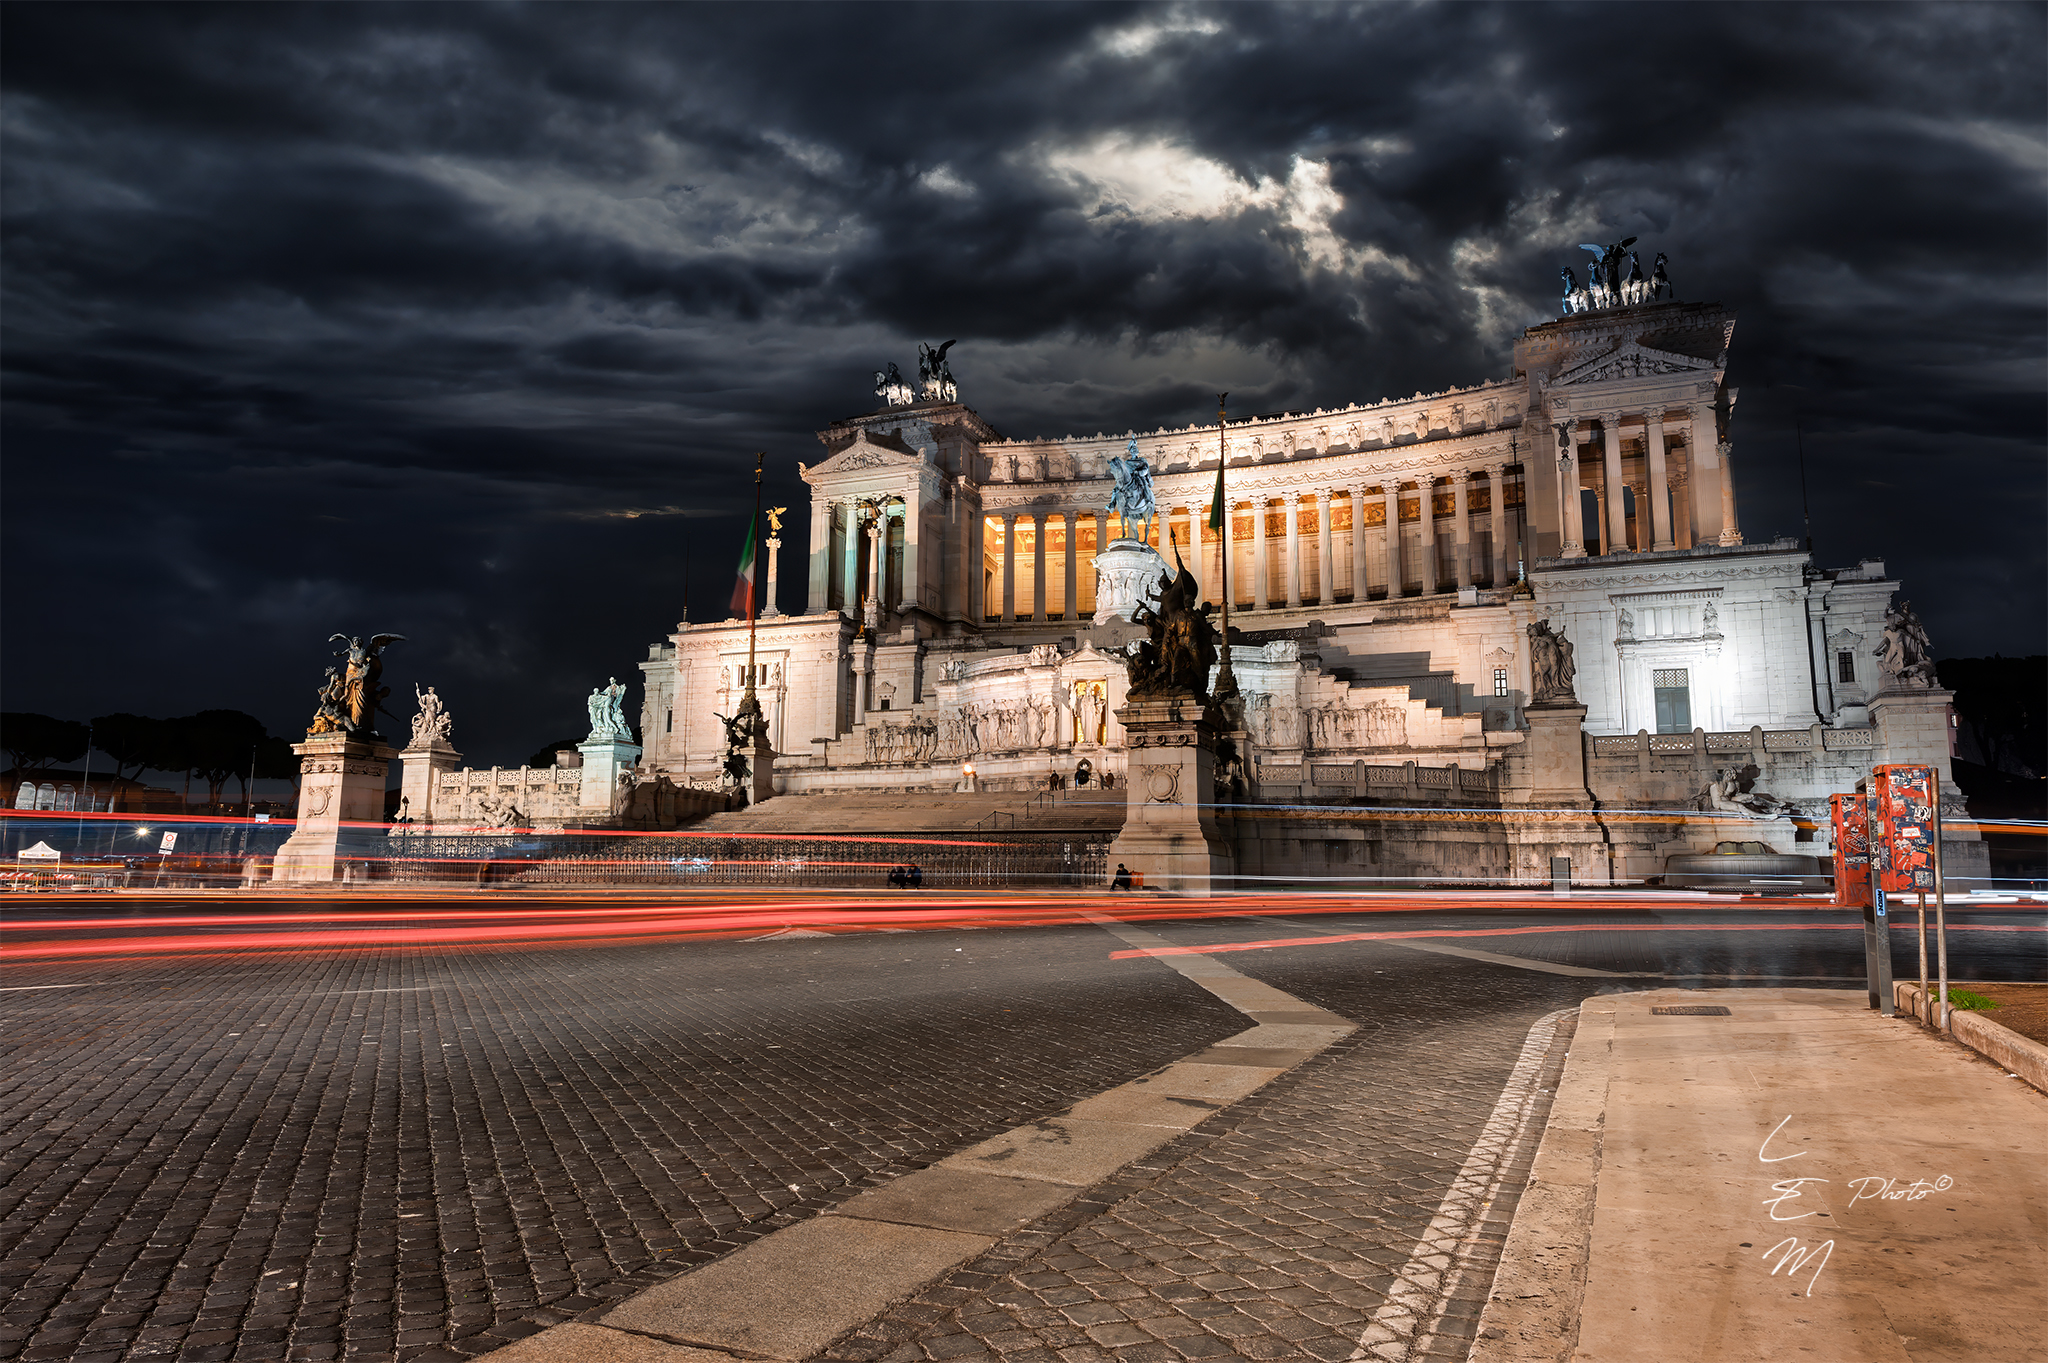 rome, vittoriano, night, lights, clouds, altare della patria, Enrico Luzi